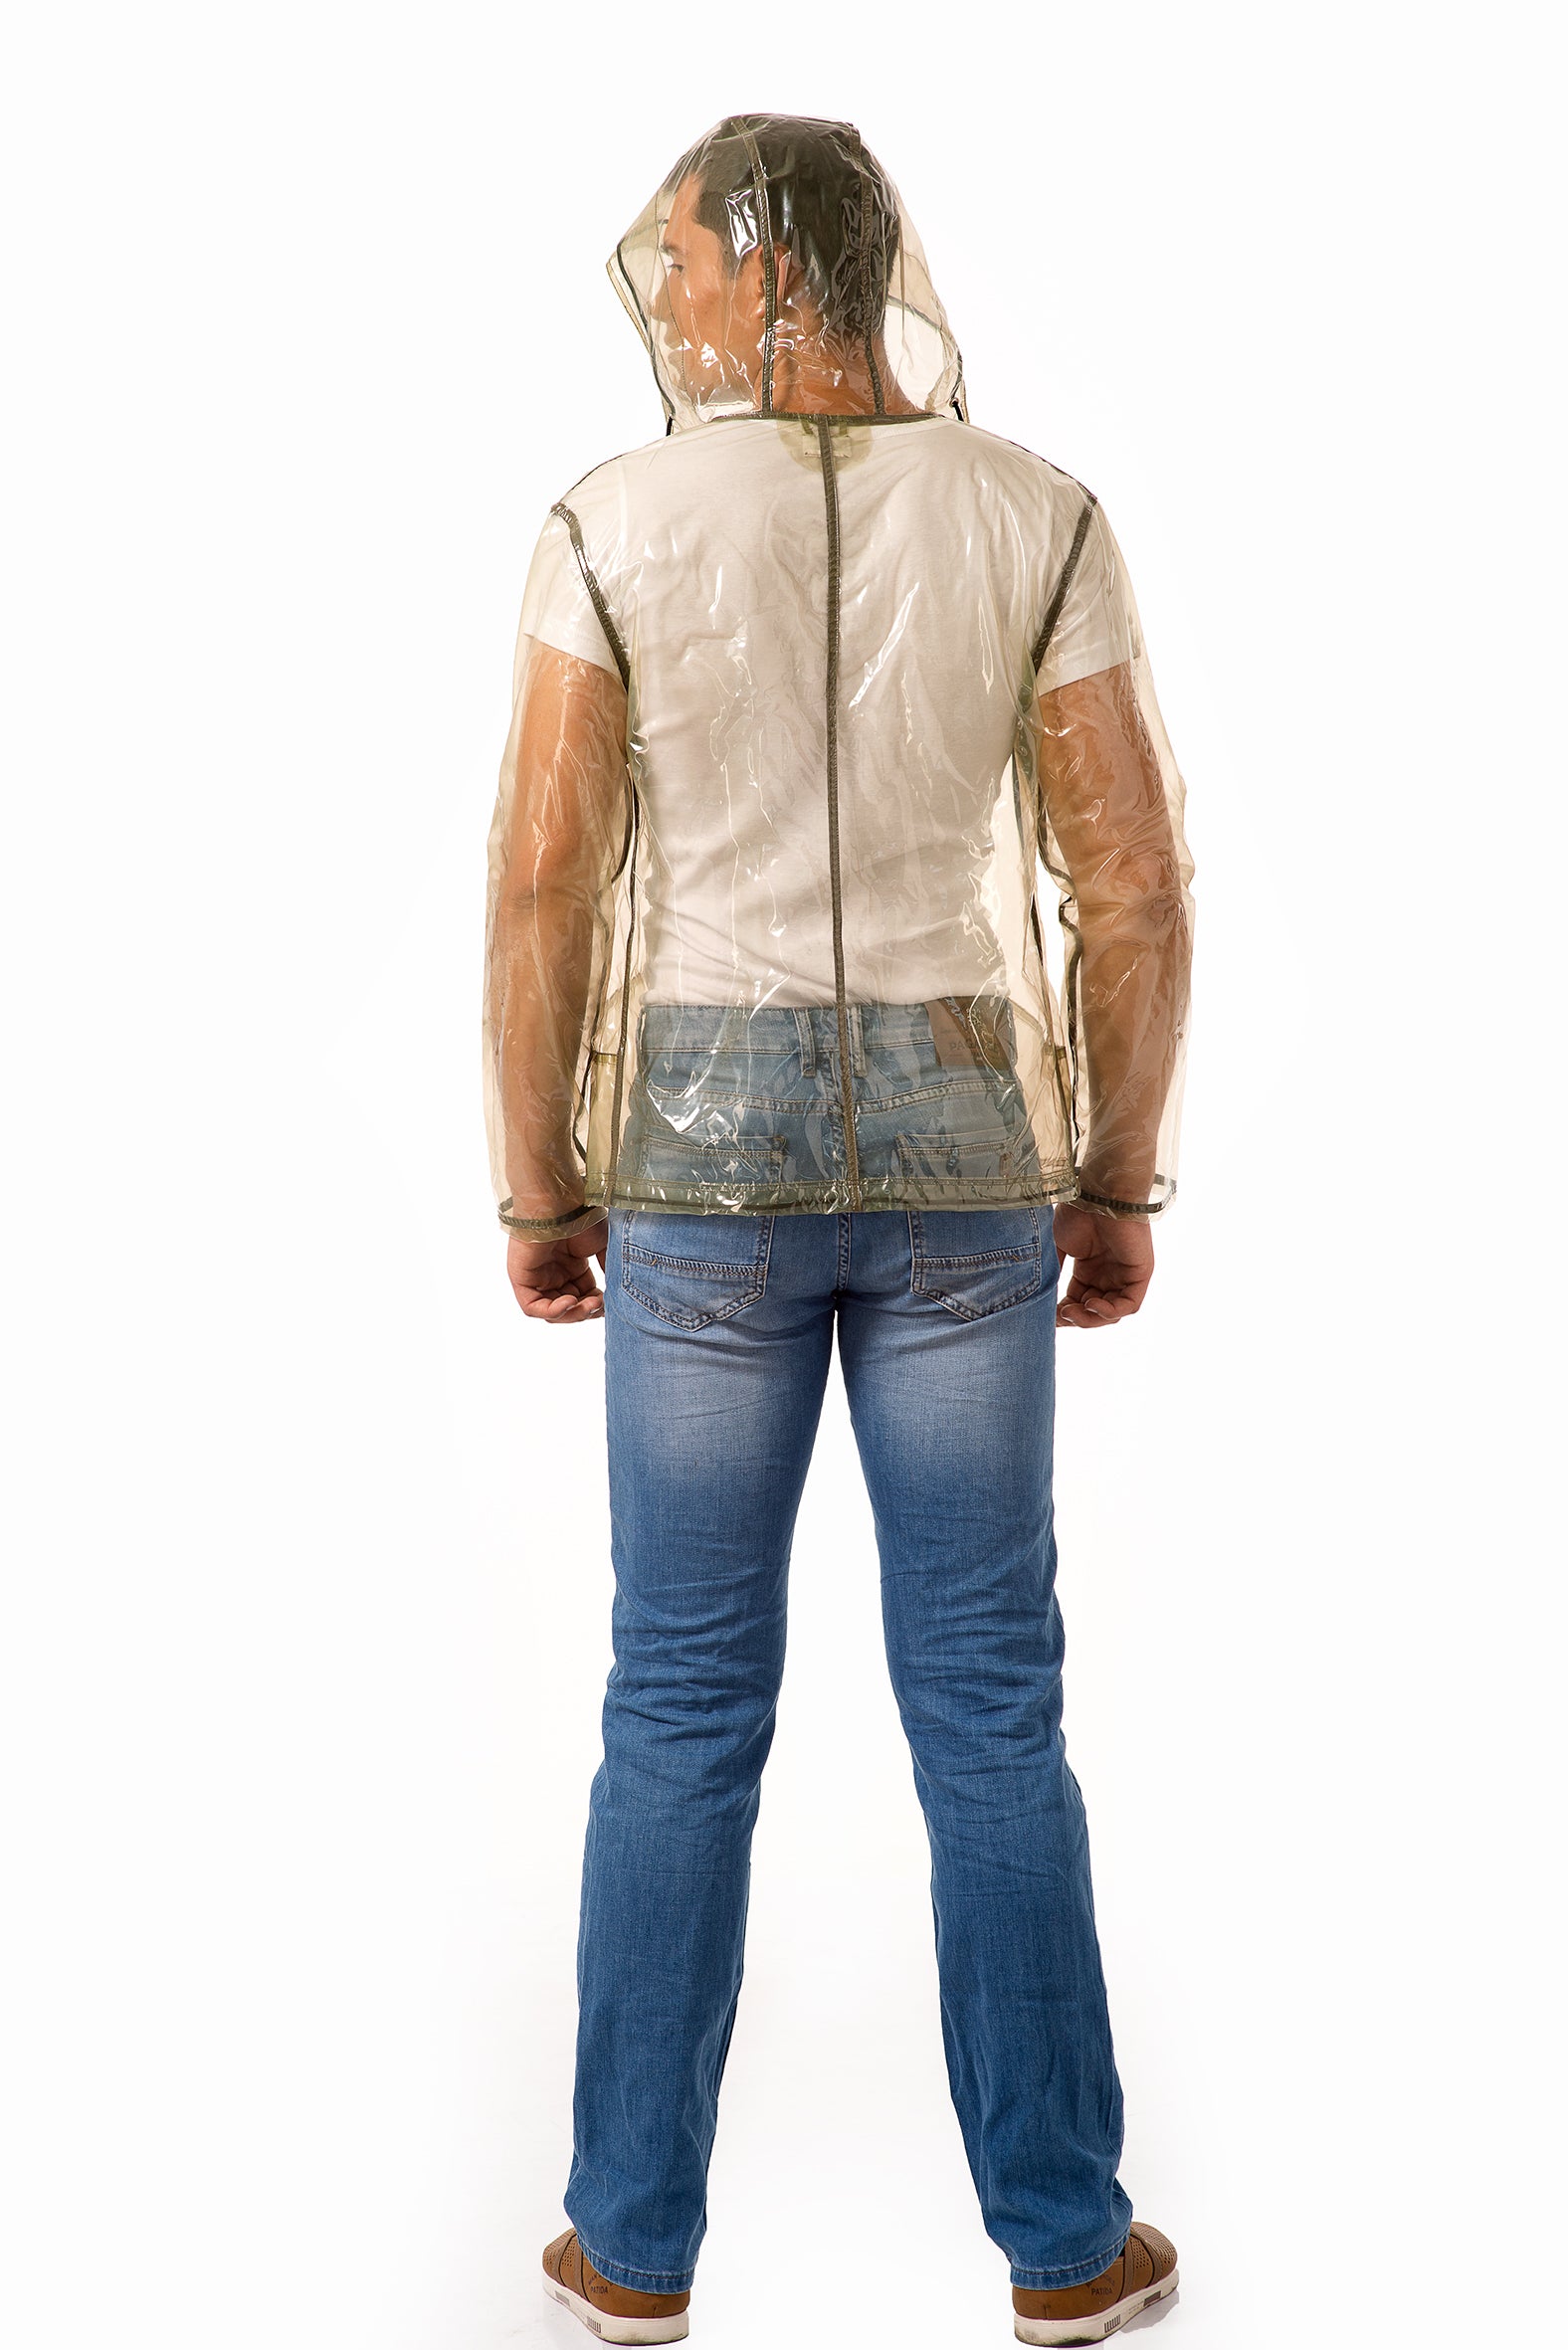 Men's Vinyl sport Jacket! Transparent Rain Jacket.